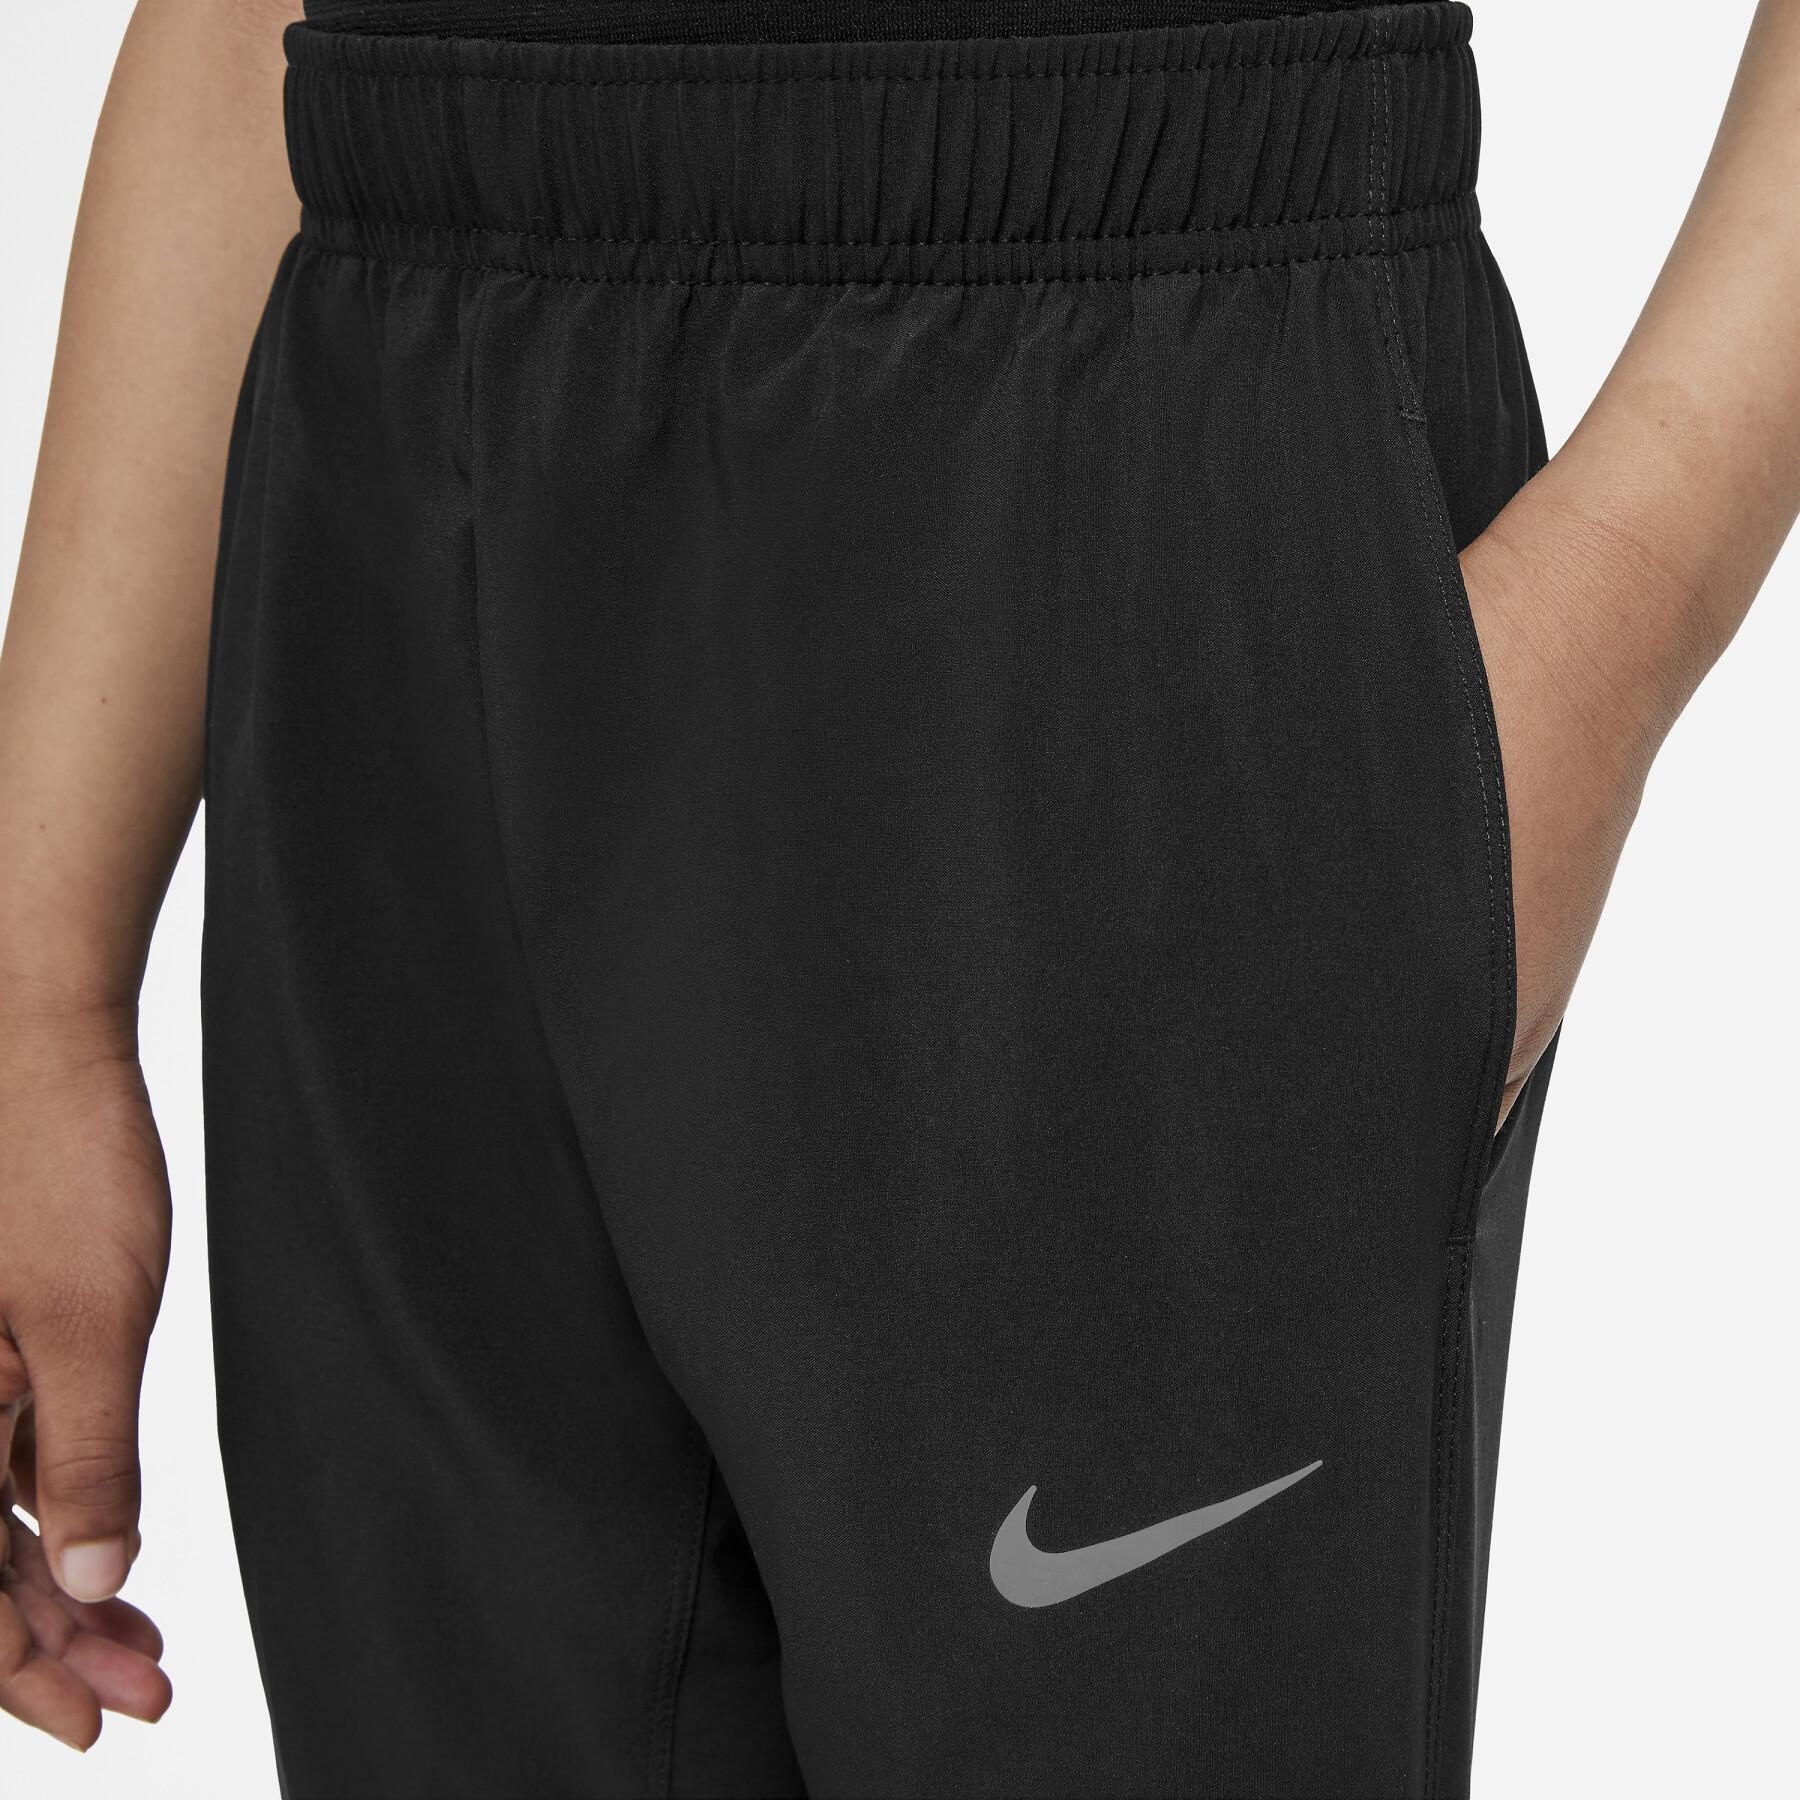 Children's jogging suit Nike Woven